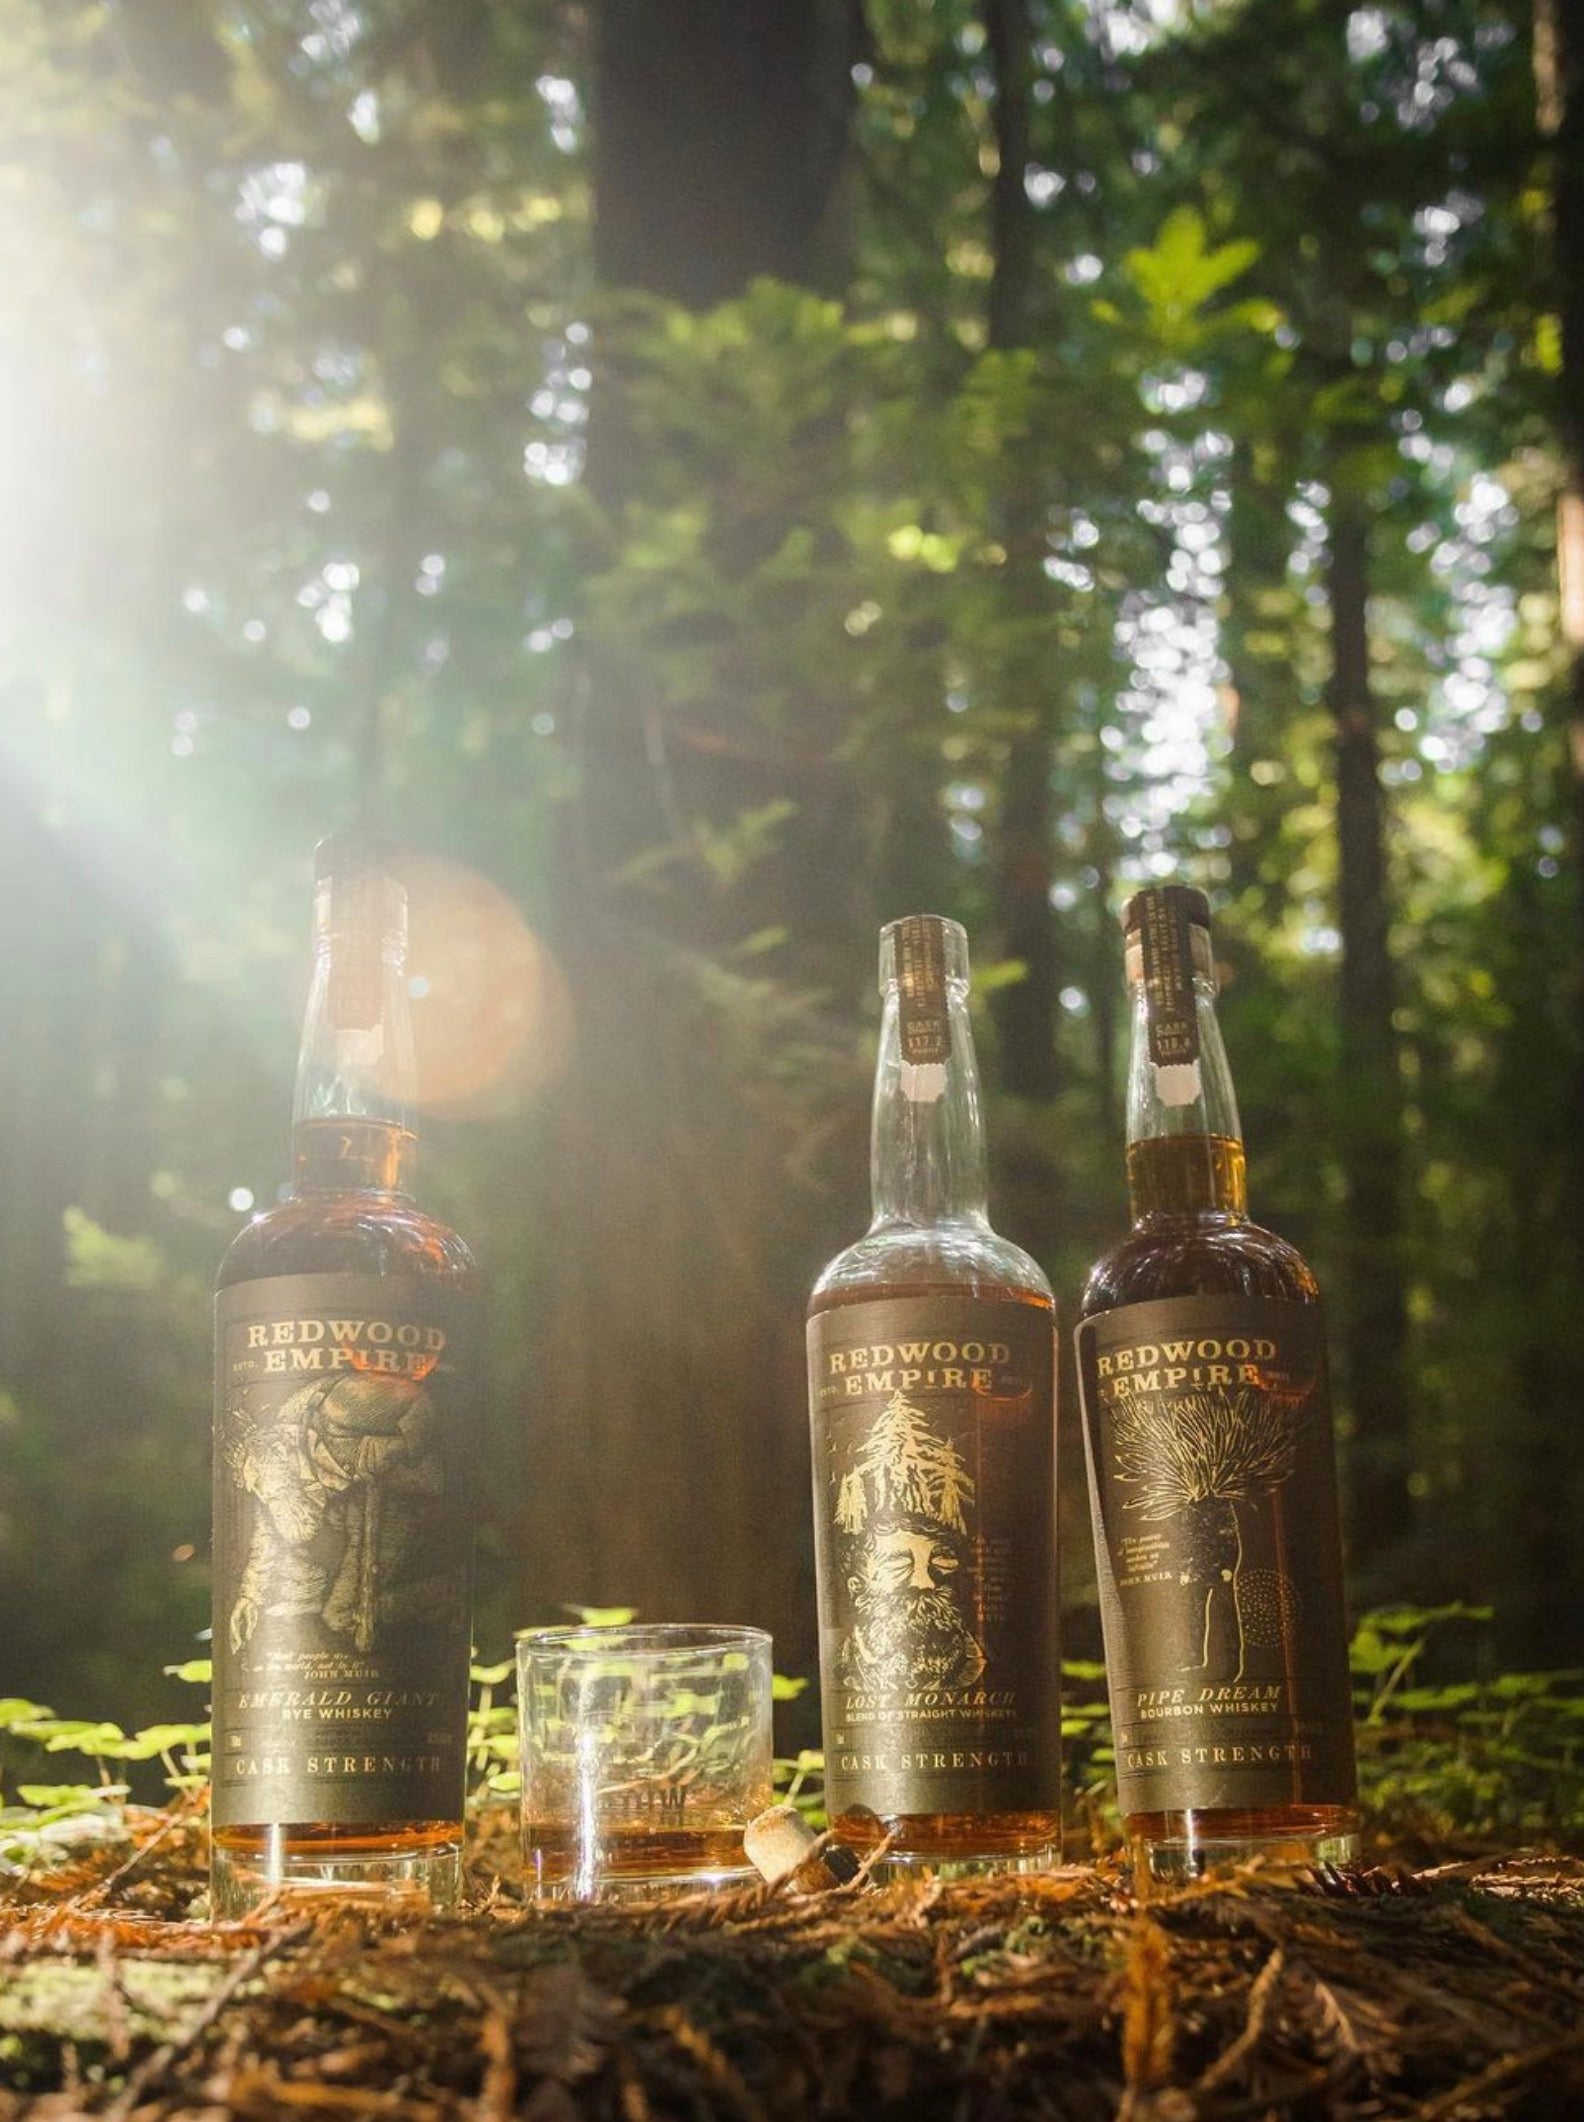 Redwood Empire "Pipe Dream" Cask Strength Bourbon